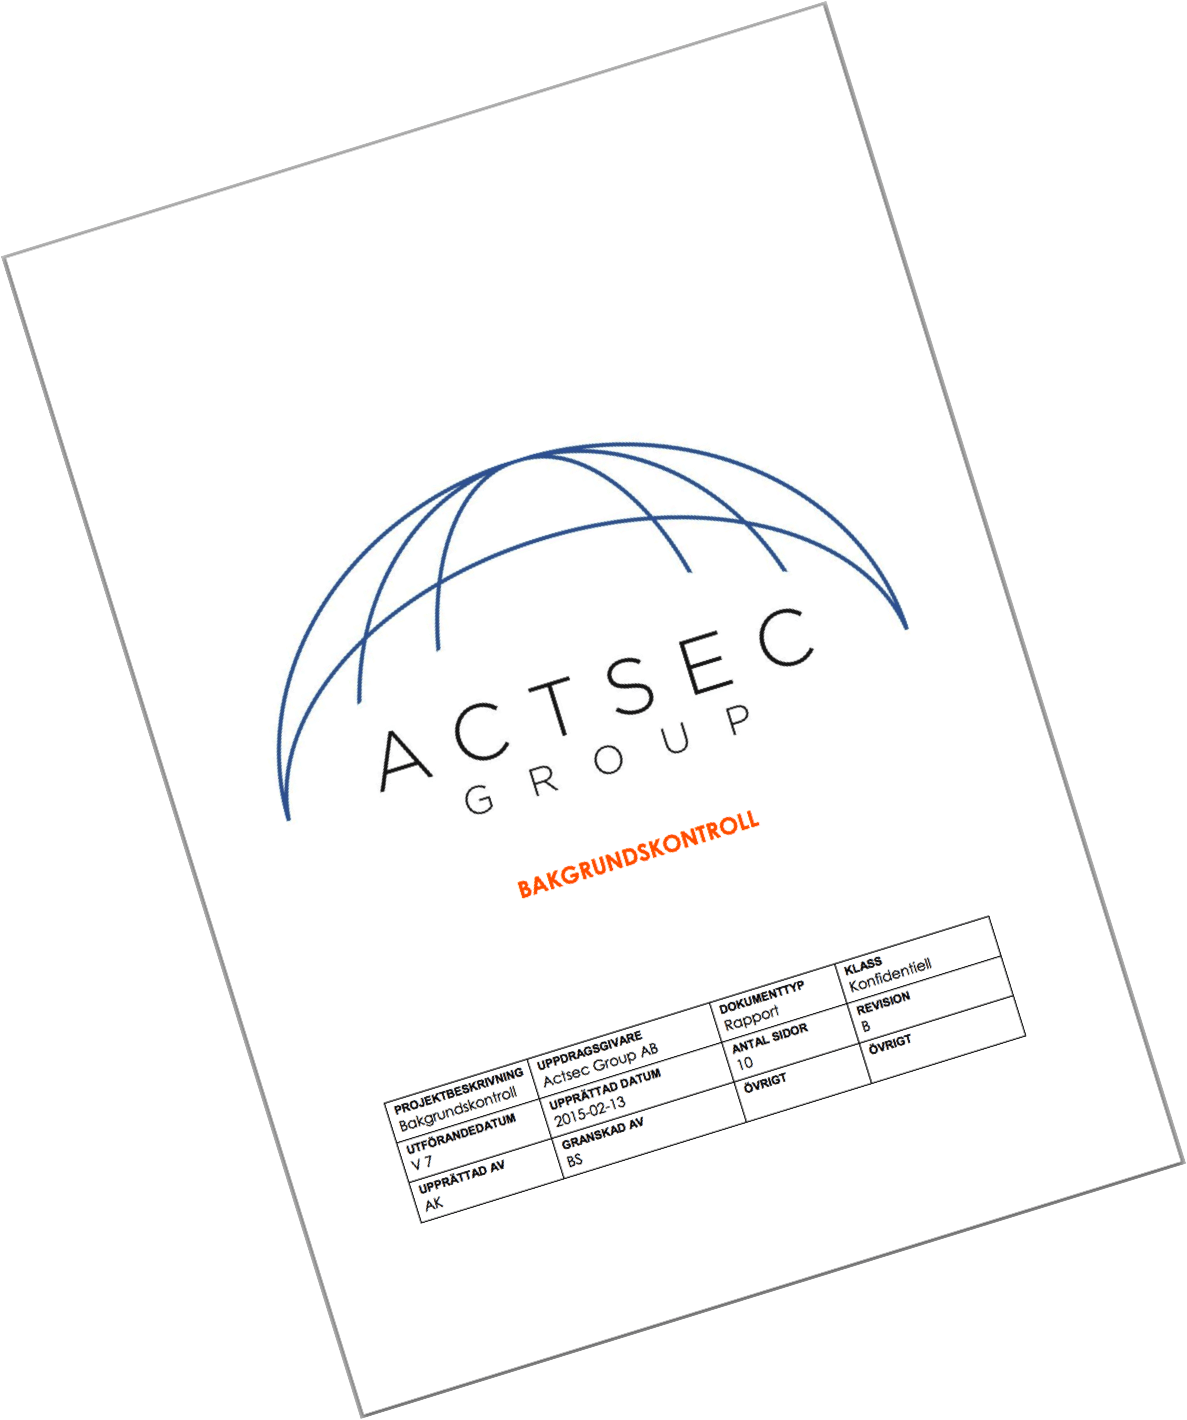 Actsec